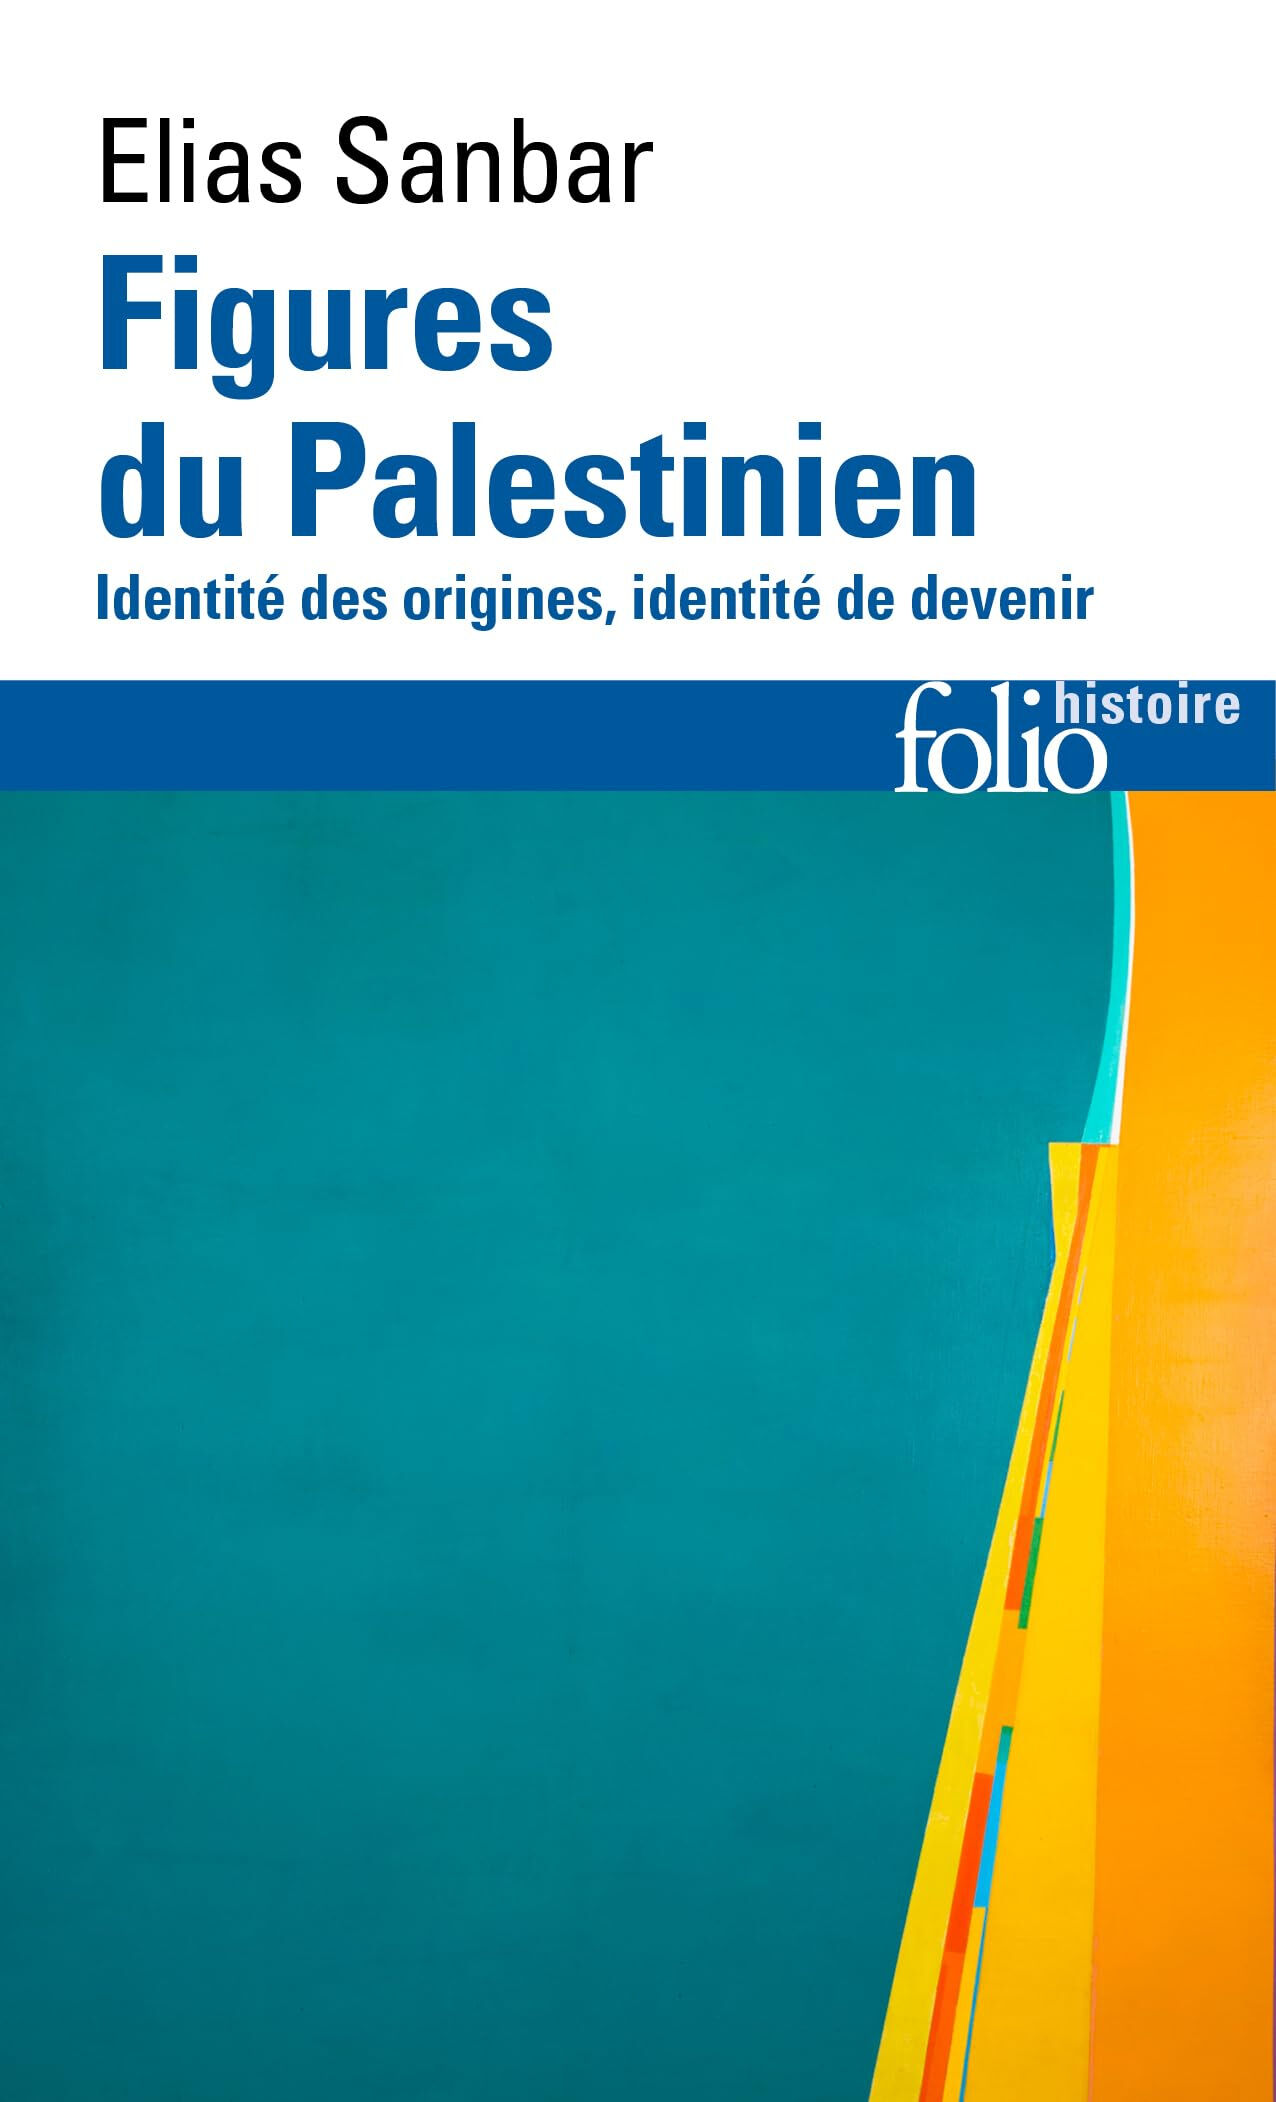 Figures du Palestinien : identité des origines, identité de devenir Elias Sanbar Gallimard